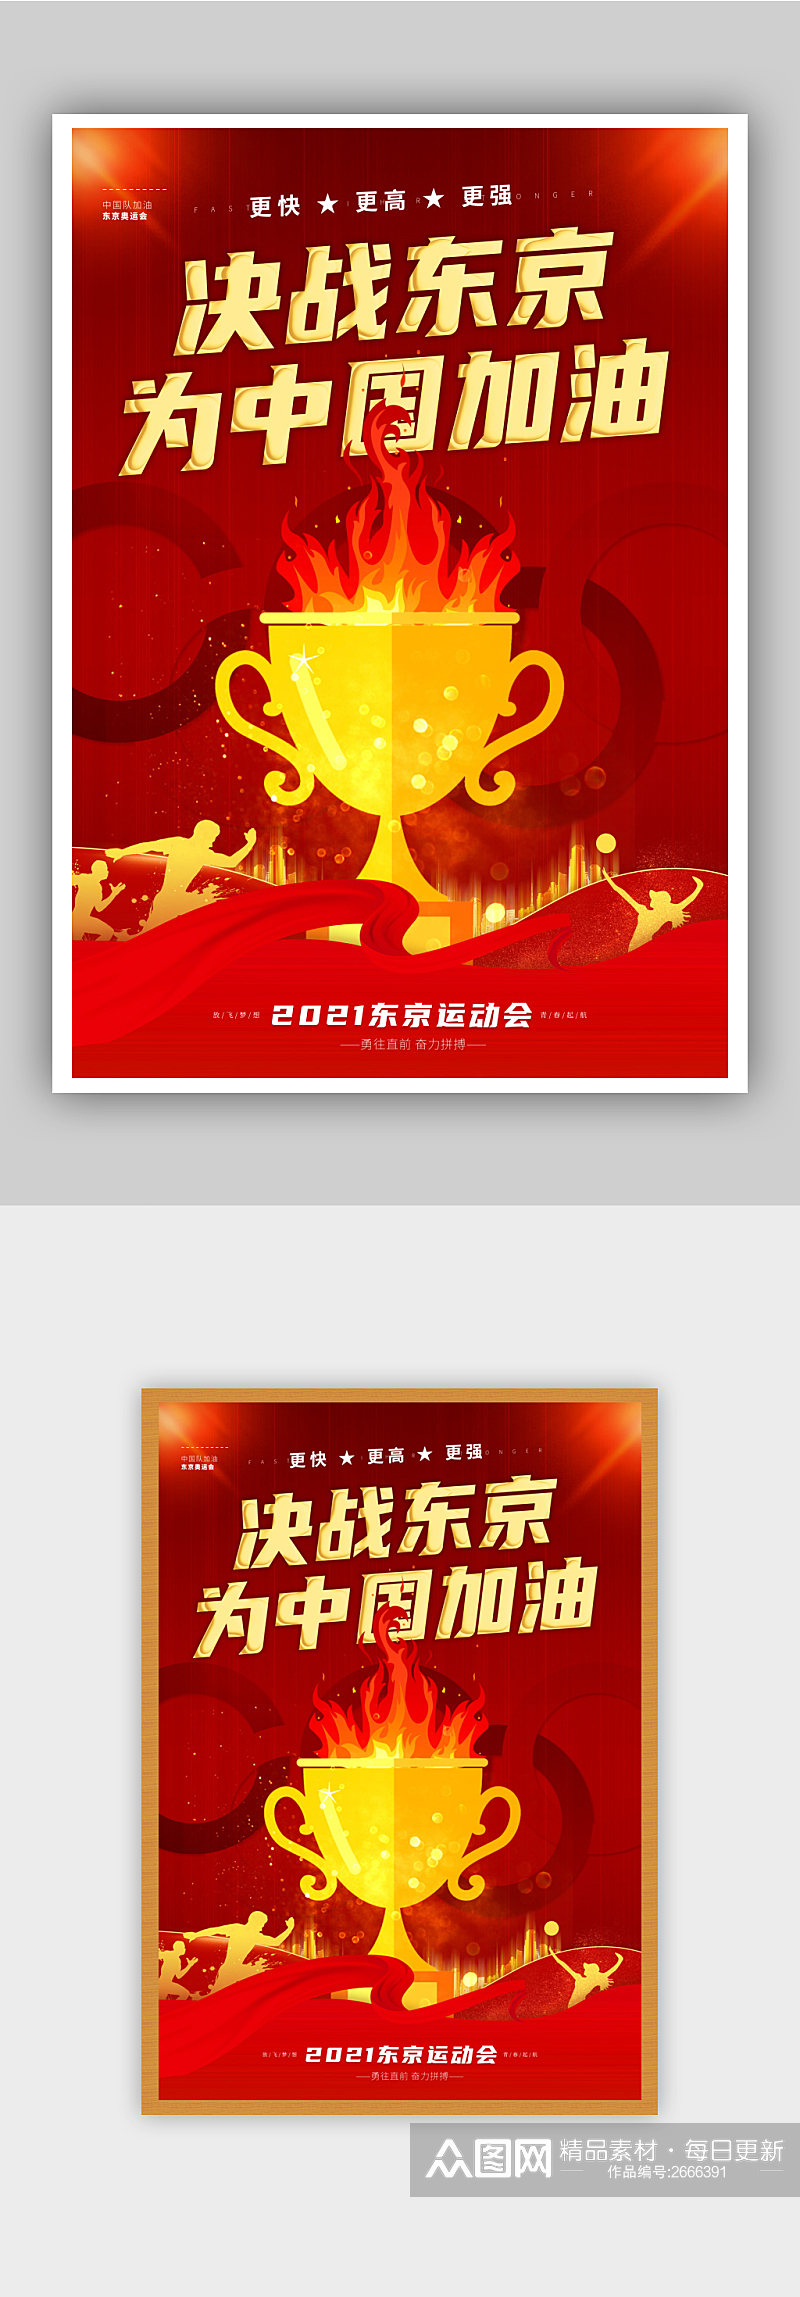 红色喜庆东京奥运会标语宣传海报素材